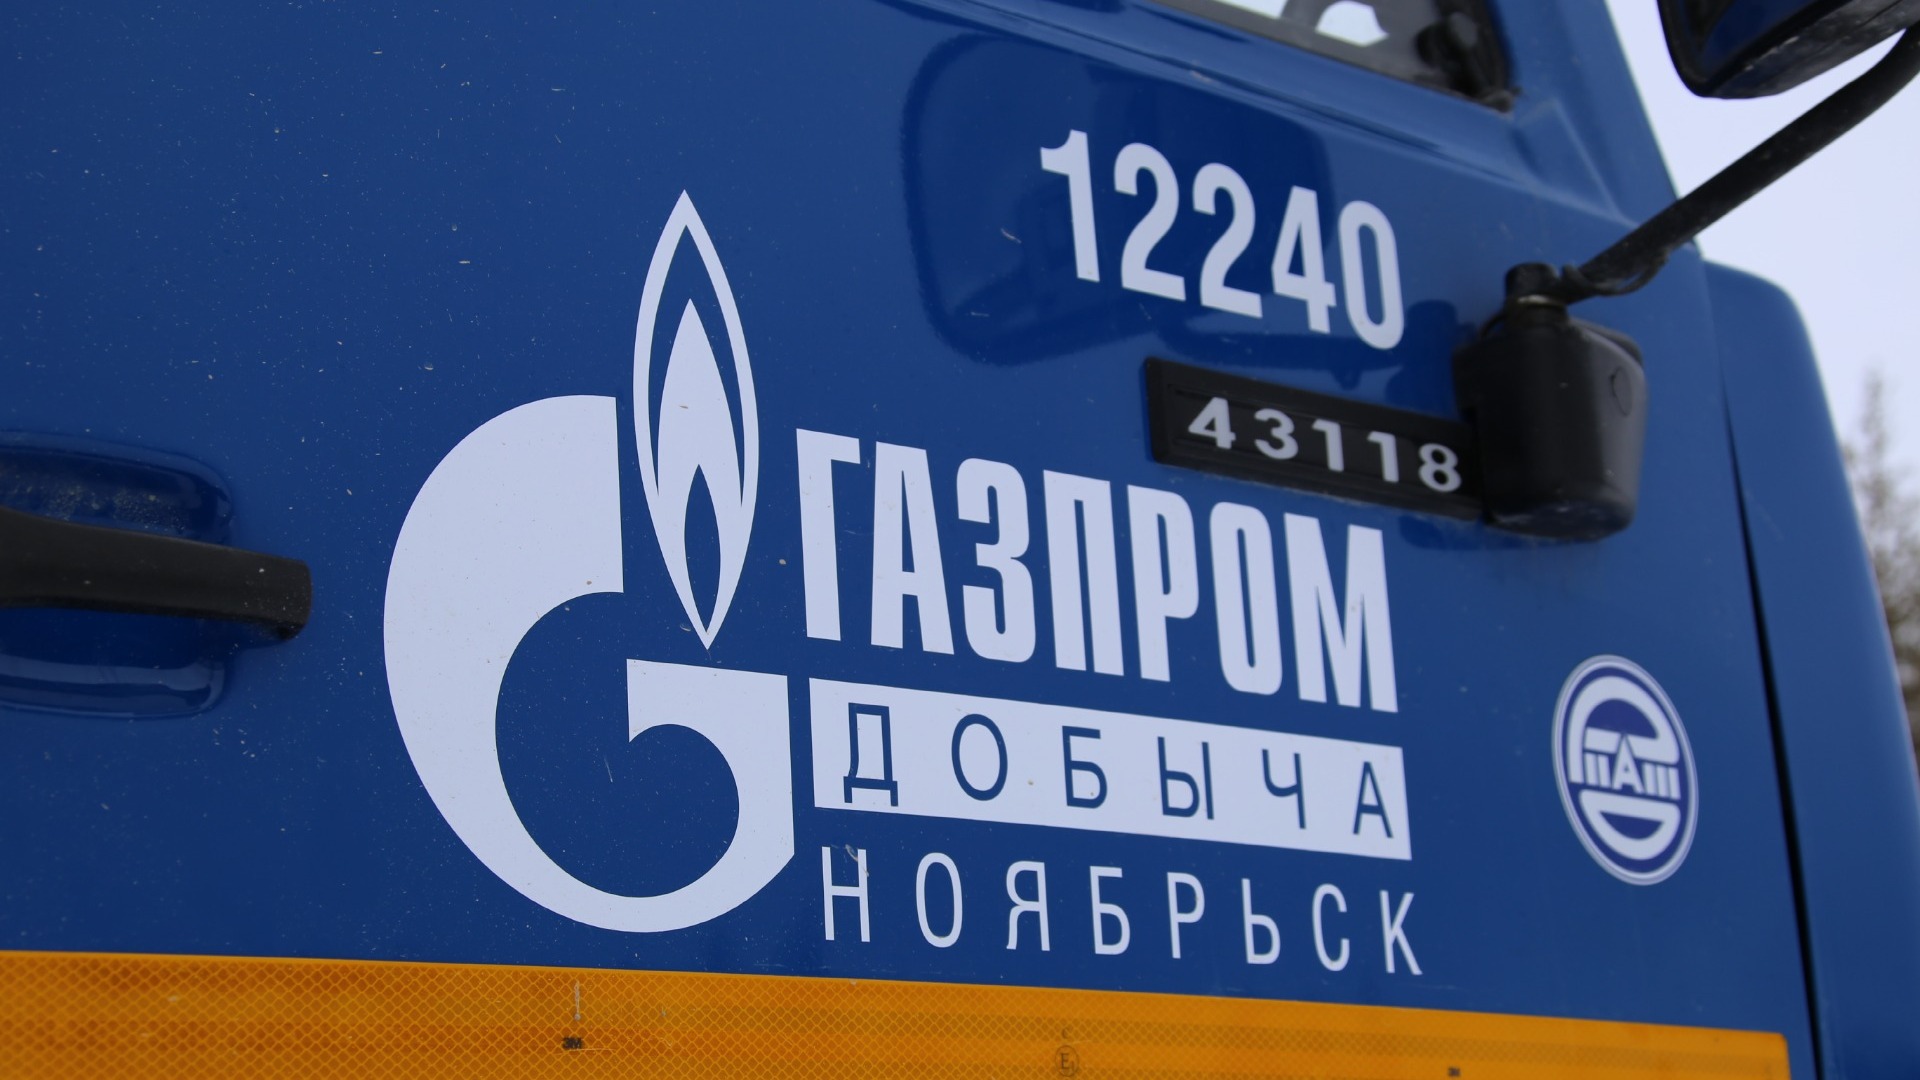 Сотрудники "Газпрома", находясь на вахте, смогли досрочно принять участие в выборах губернатора Тюменской области 